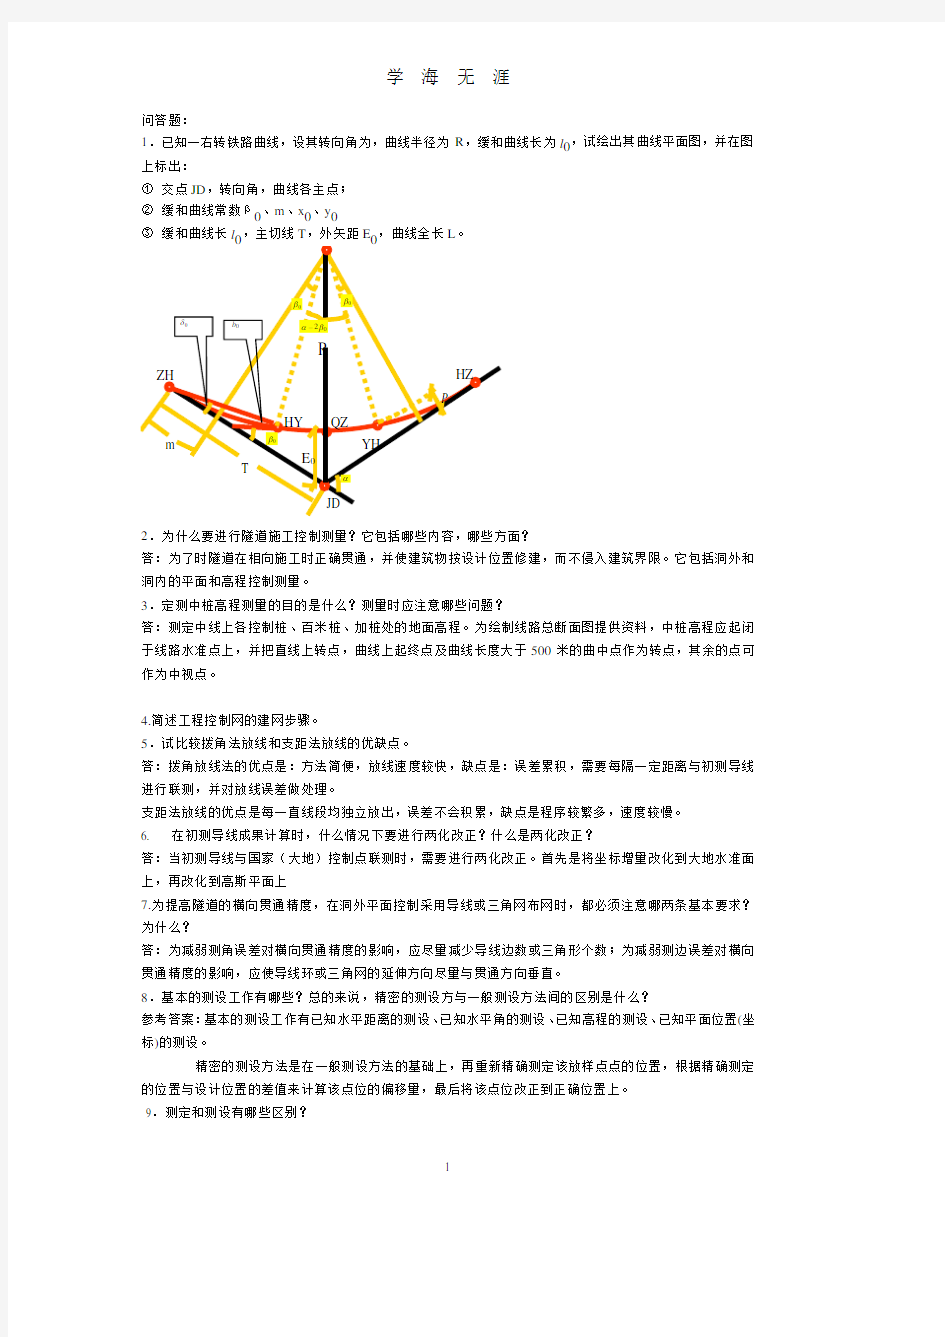 工程测量学考试参考复习资料(7月20日).pdf